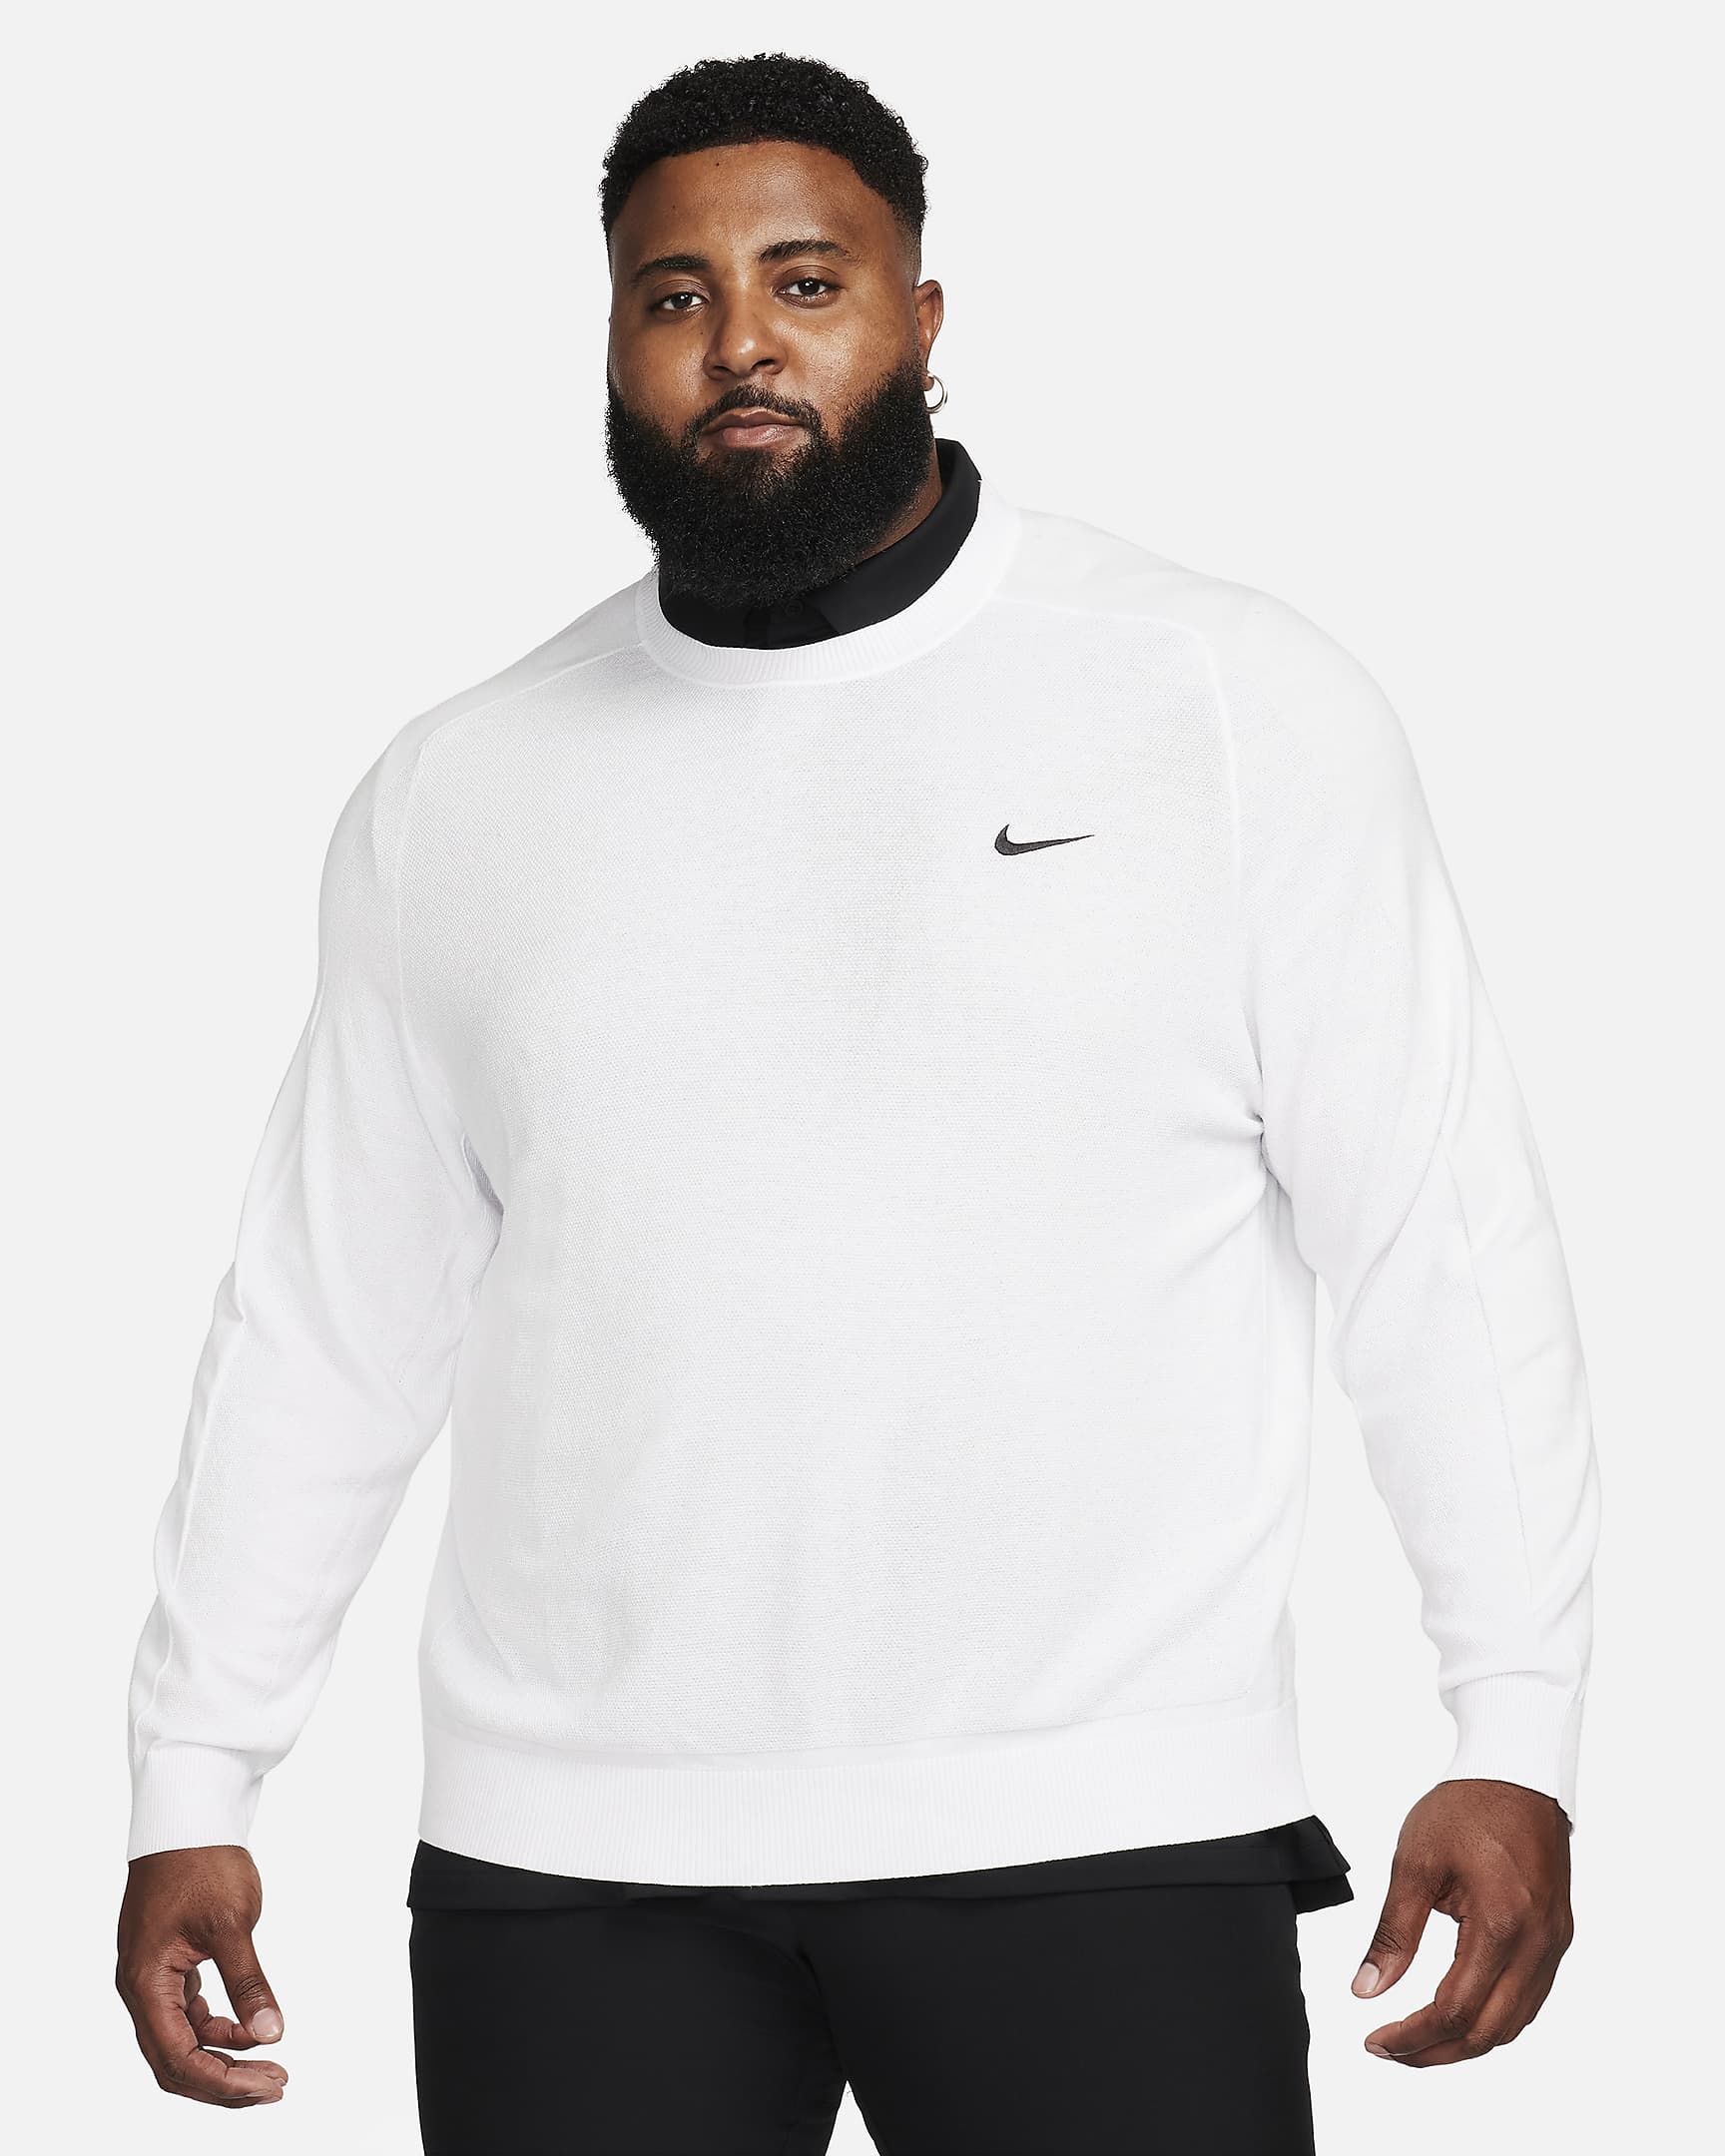 Sweater de golf tejido para hombre Tiger Woods. Nike.com